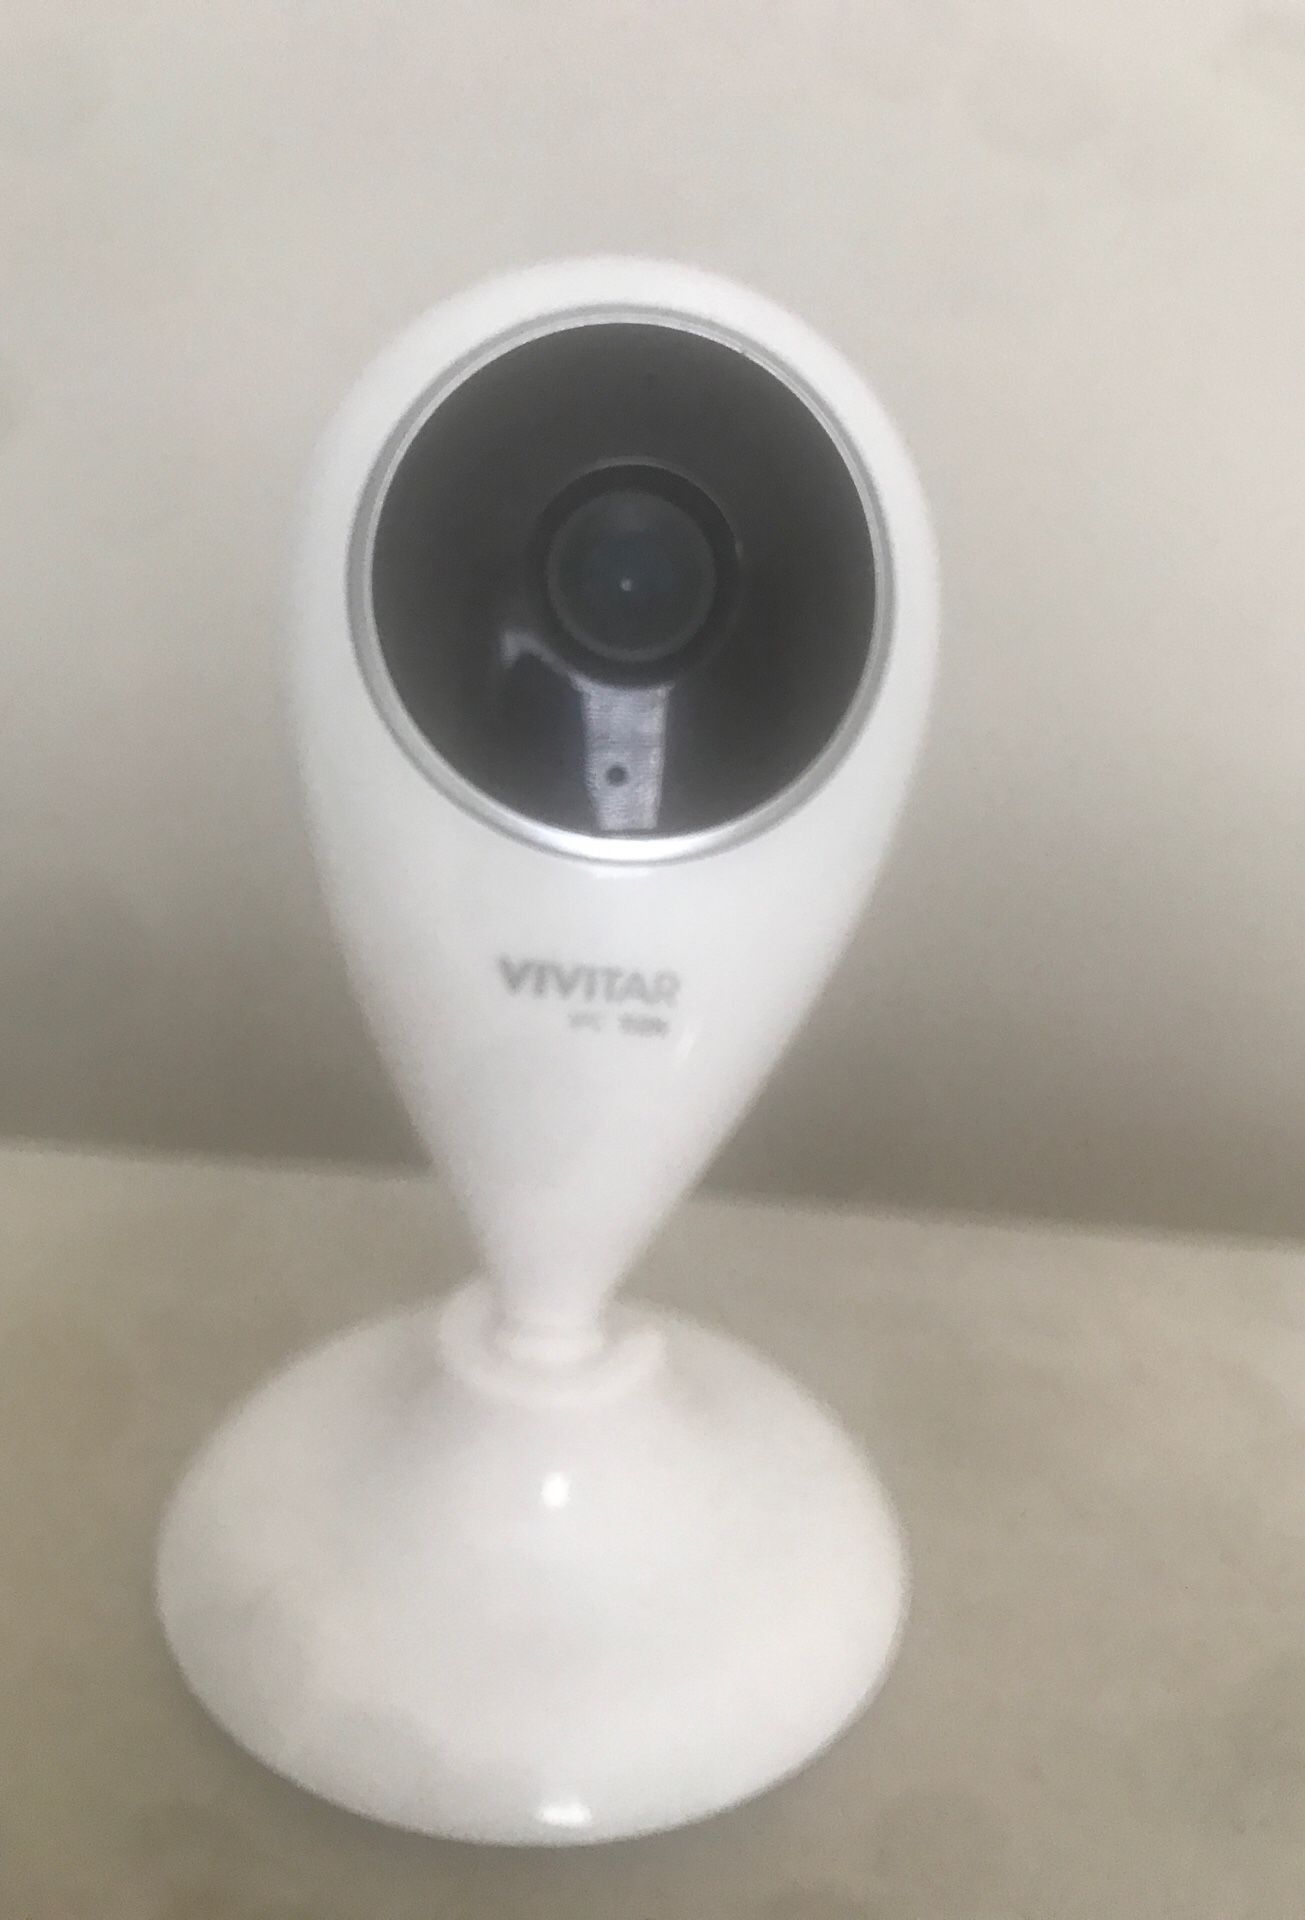 Vivitar home security camera